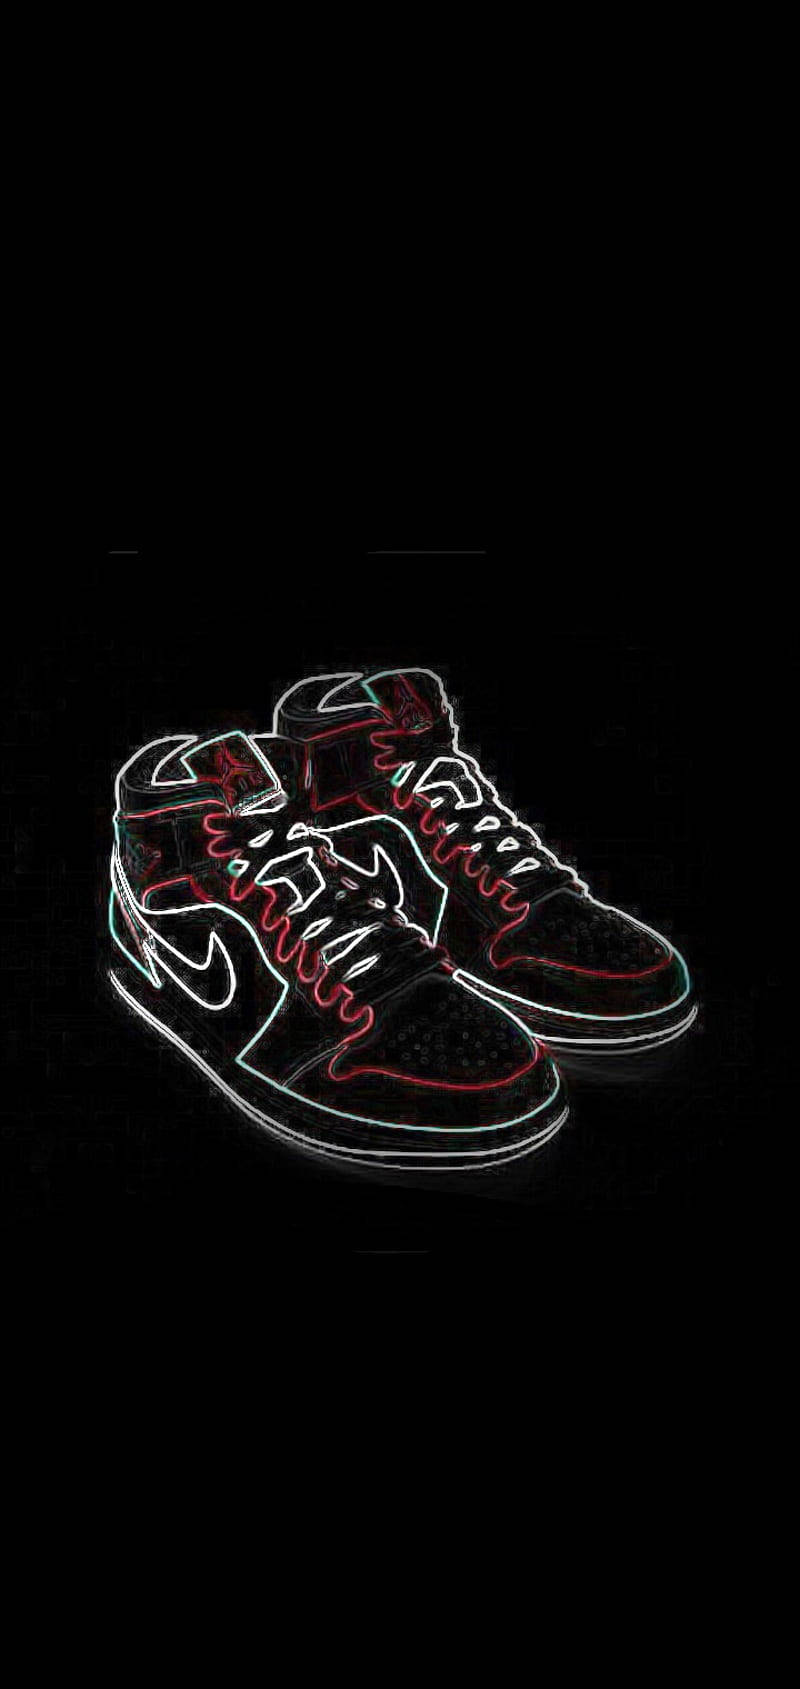 Líneade Arte De Zapatillas Nike Jordans. Fondo de pantalla